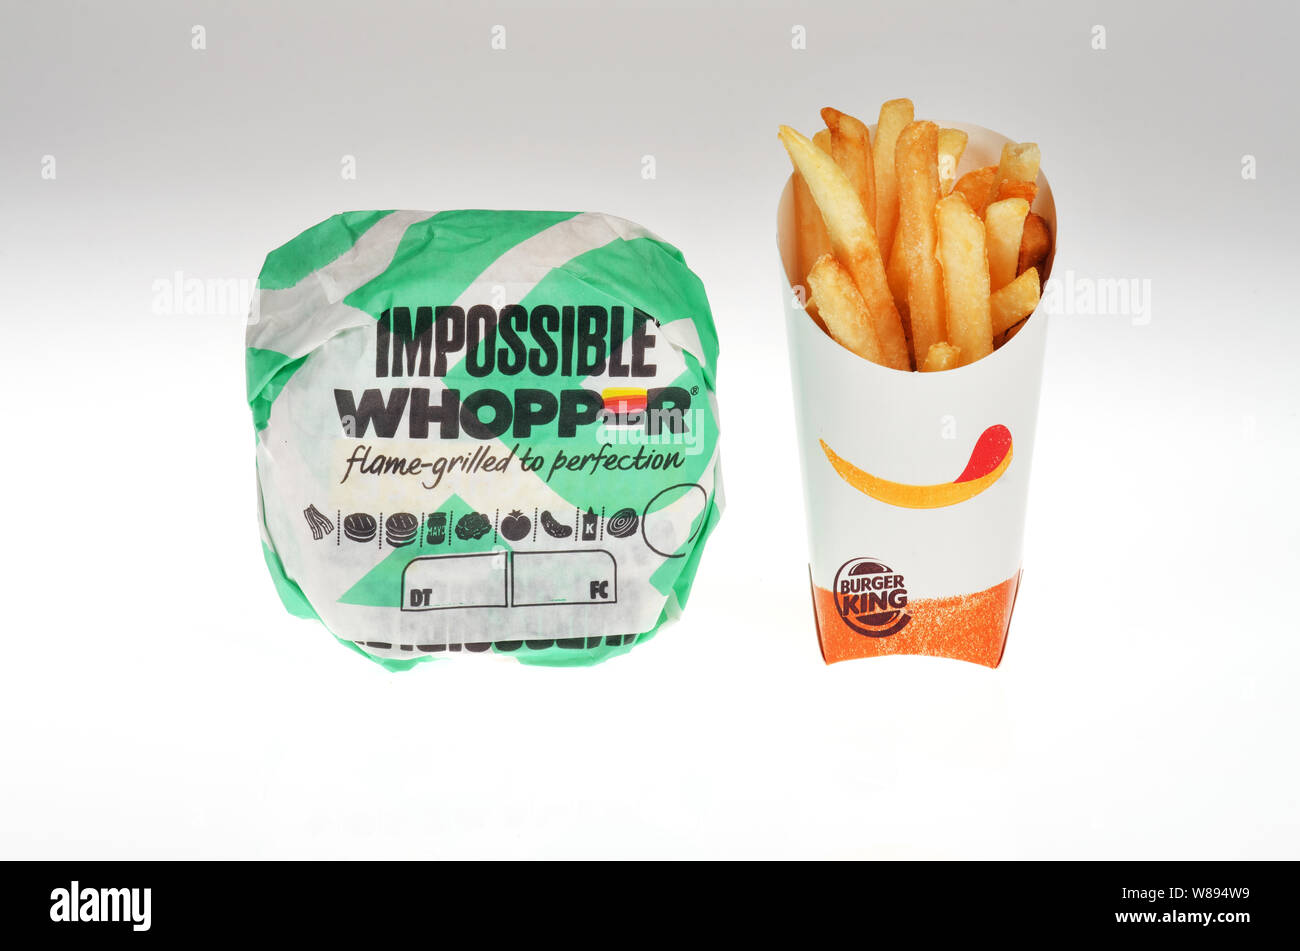 Impossibile Whopper con patate fritte da Burger King, un impianto di vegetariani alimenti a base di burger introdotto negli USA a livello nazionale su agosto 08, 2019 Foto Stock